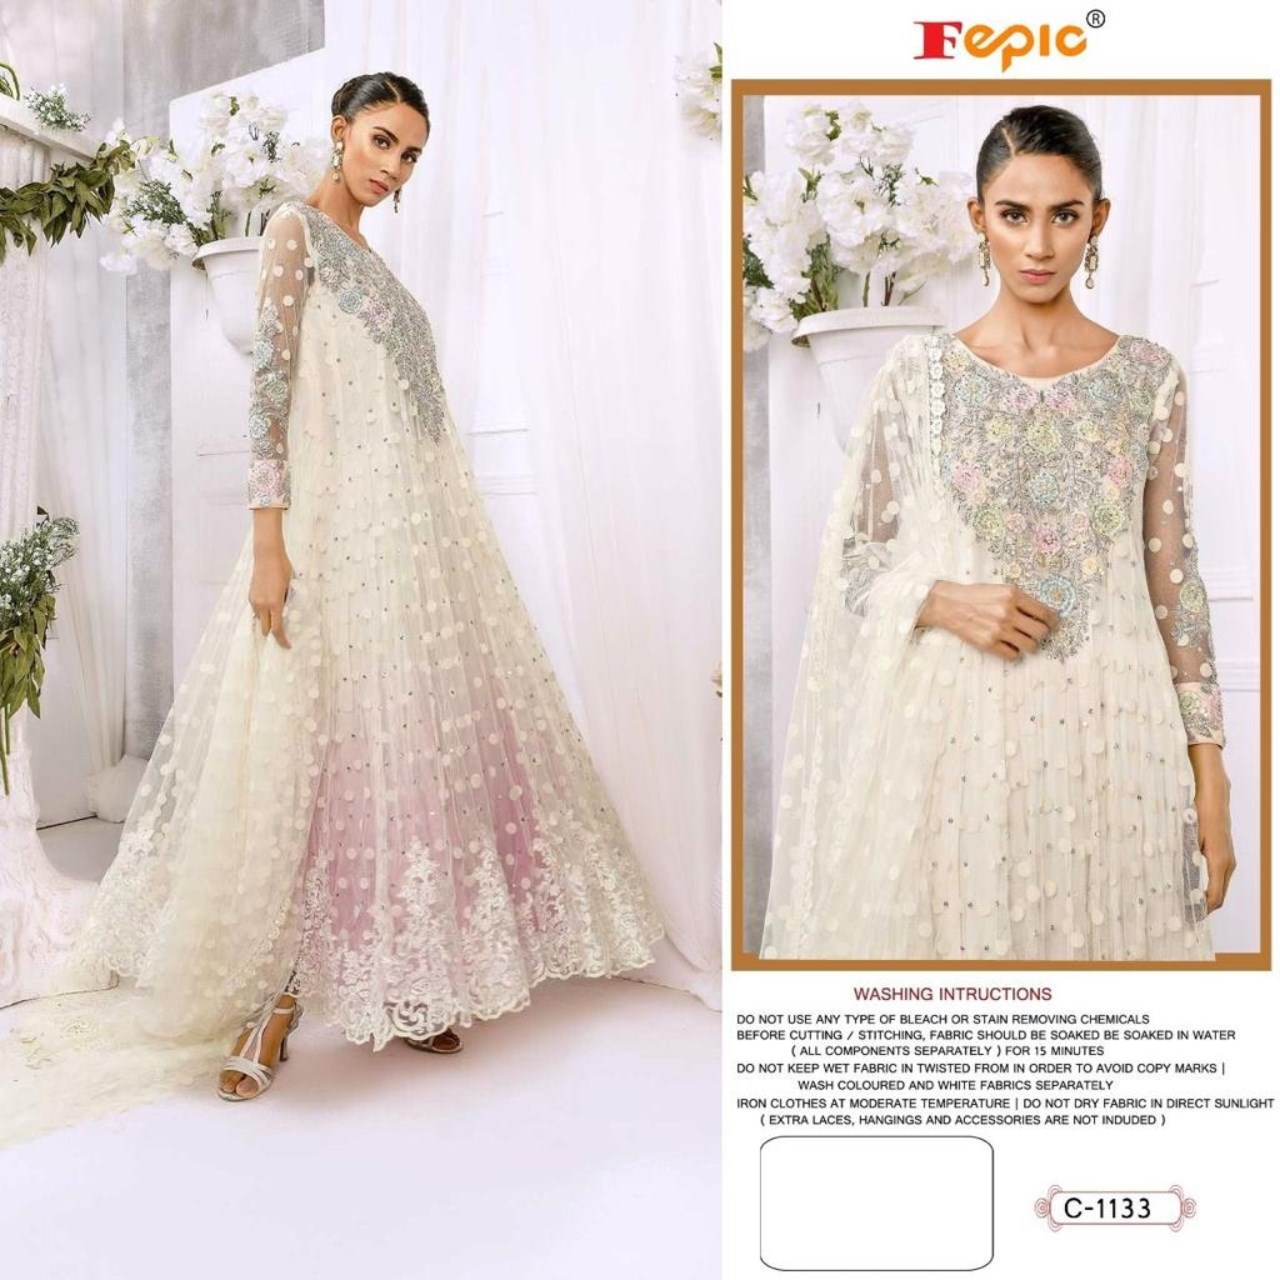 Azure Luxury Formal Wedding & Party Wear Dresses in Pakistan –  DressyZone.com